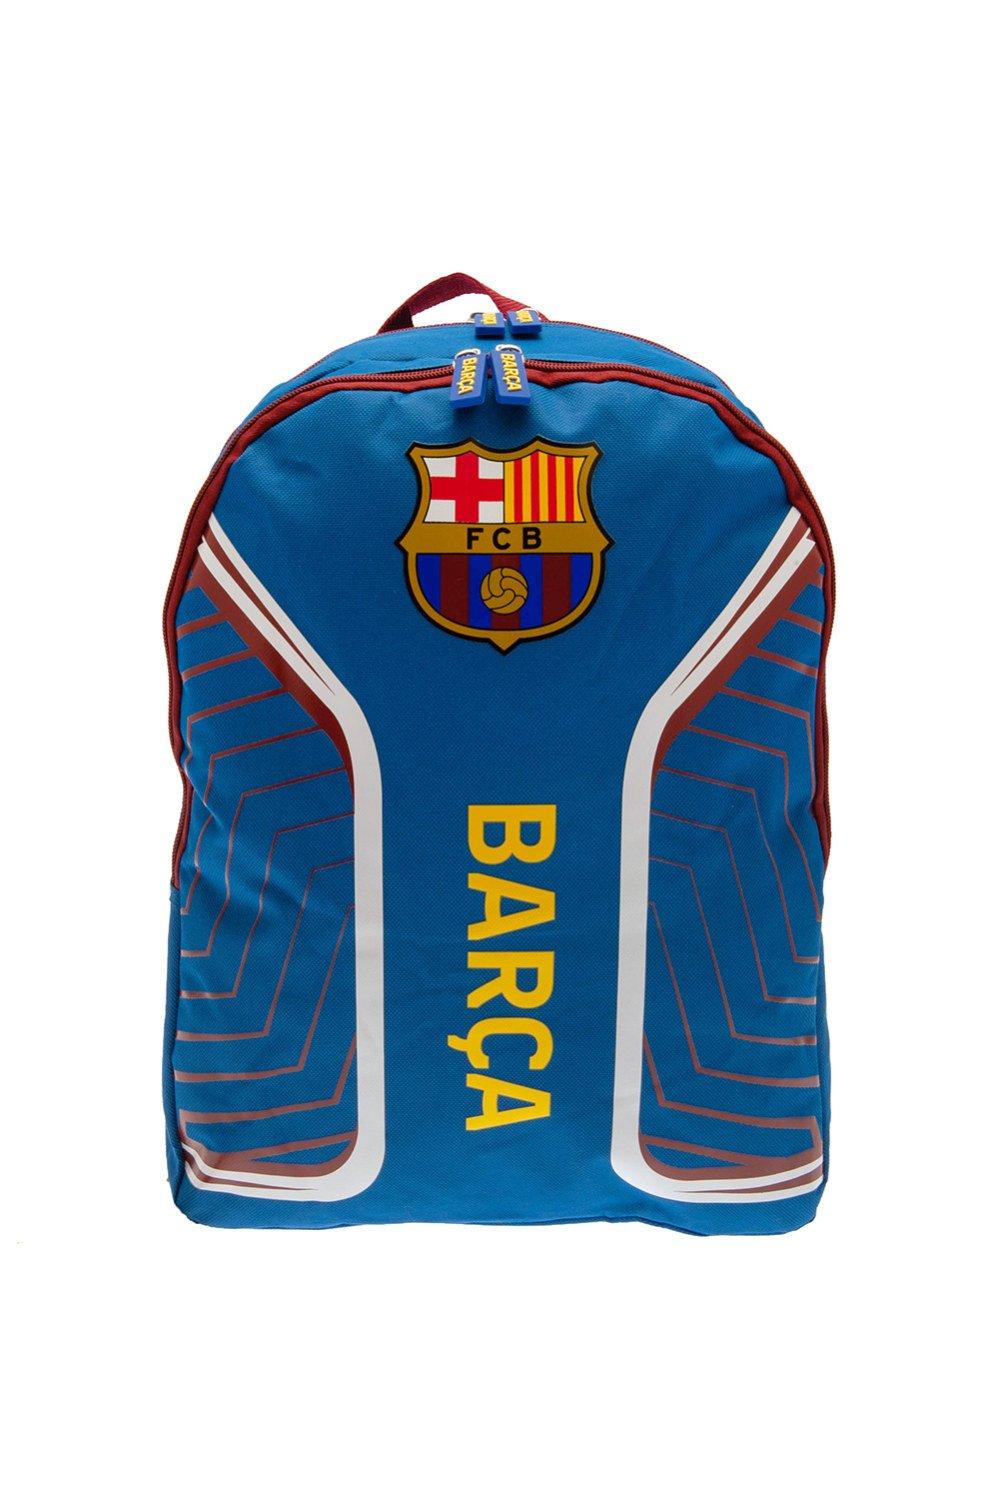 Рюкзак с гербом FC Barcelona, синий двойной плечевой ремень w формы удобный экономичный мягкий ремень для кустореза триммера садового секатора